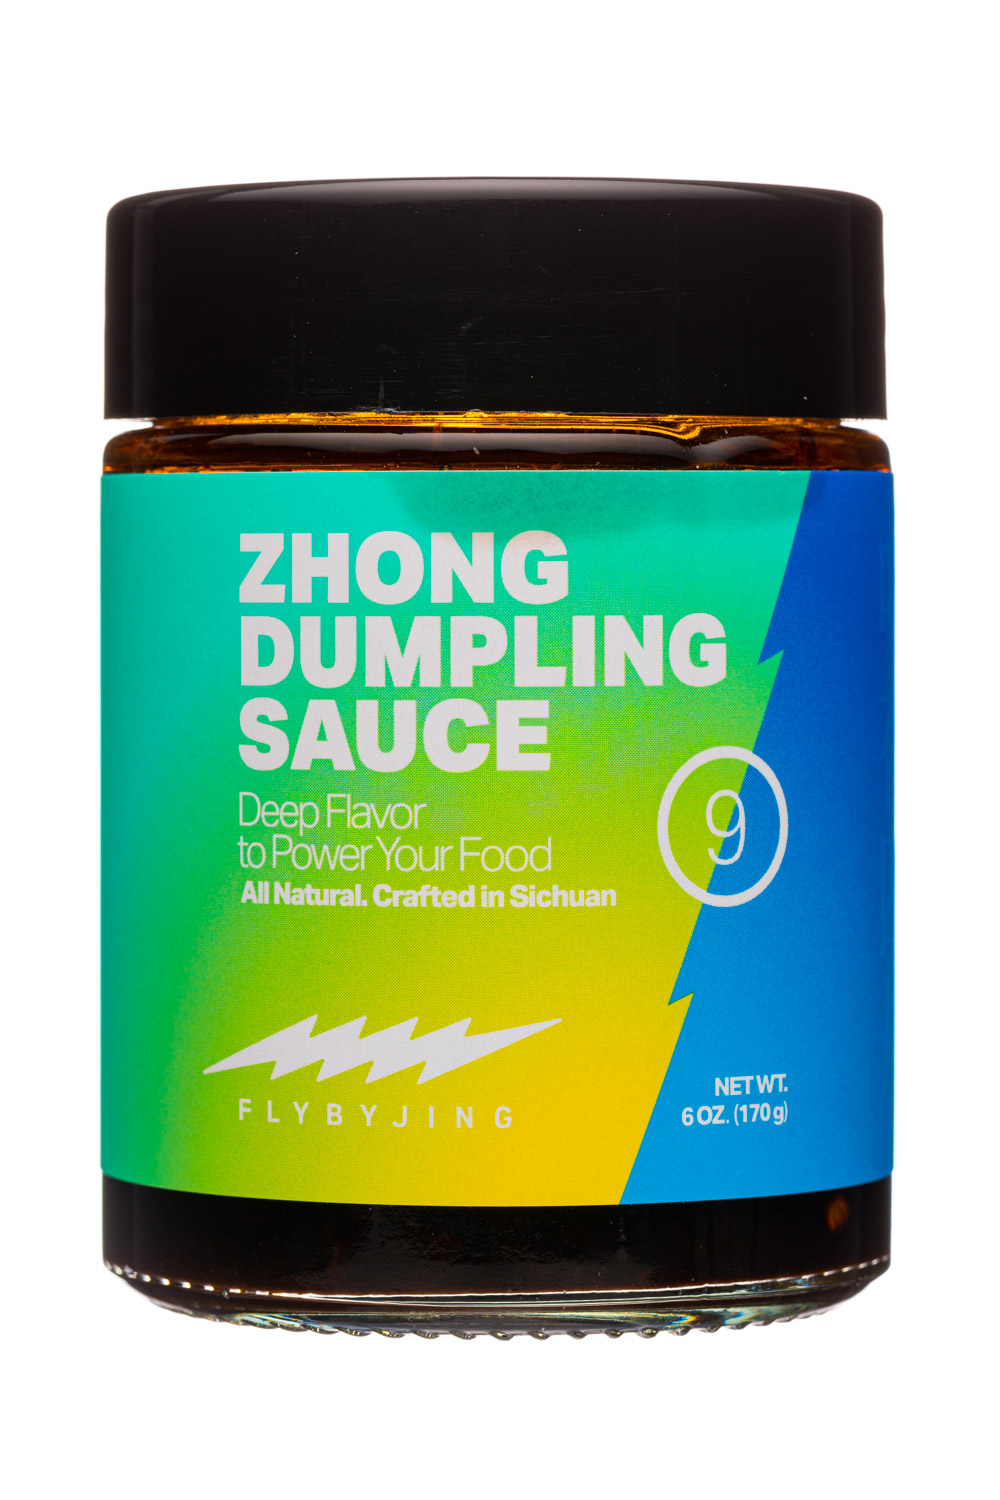 Zhong Dumpling Sauce